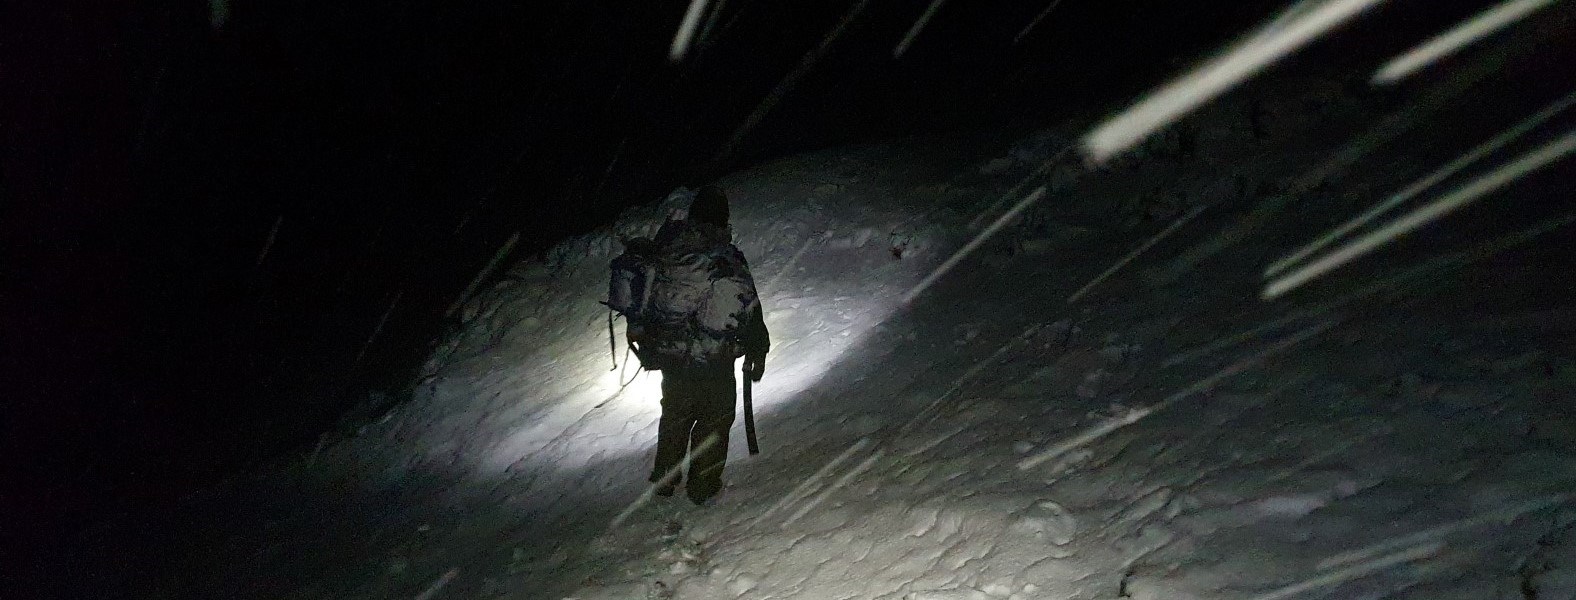 Røde Kors hjelpekorps ute i snøstorm i mørket.